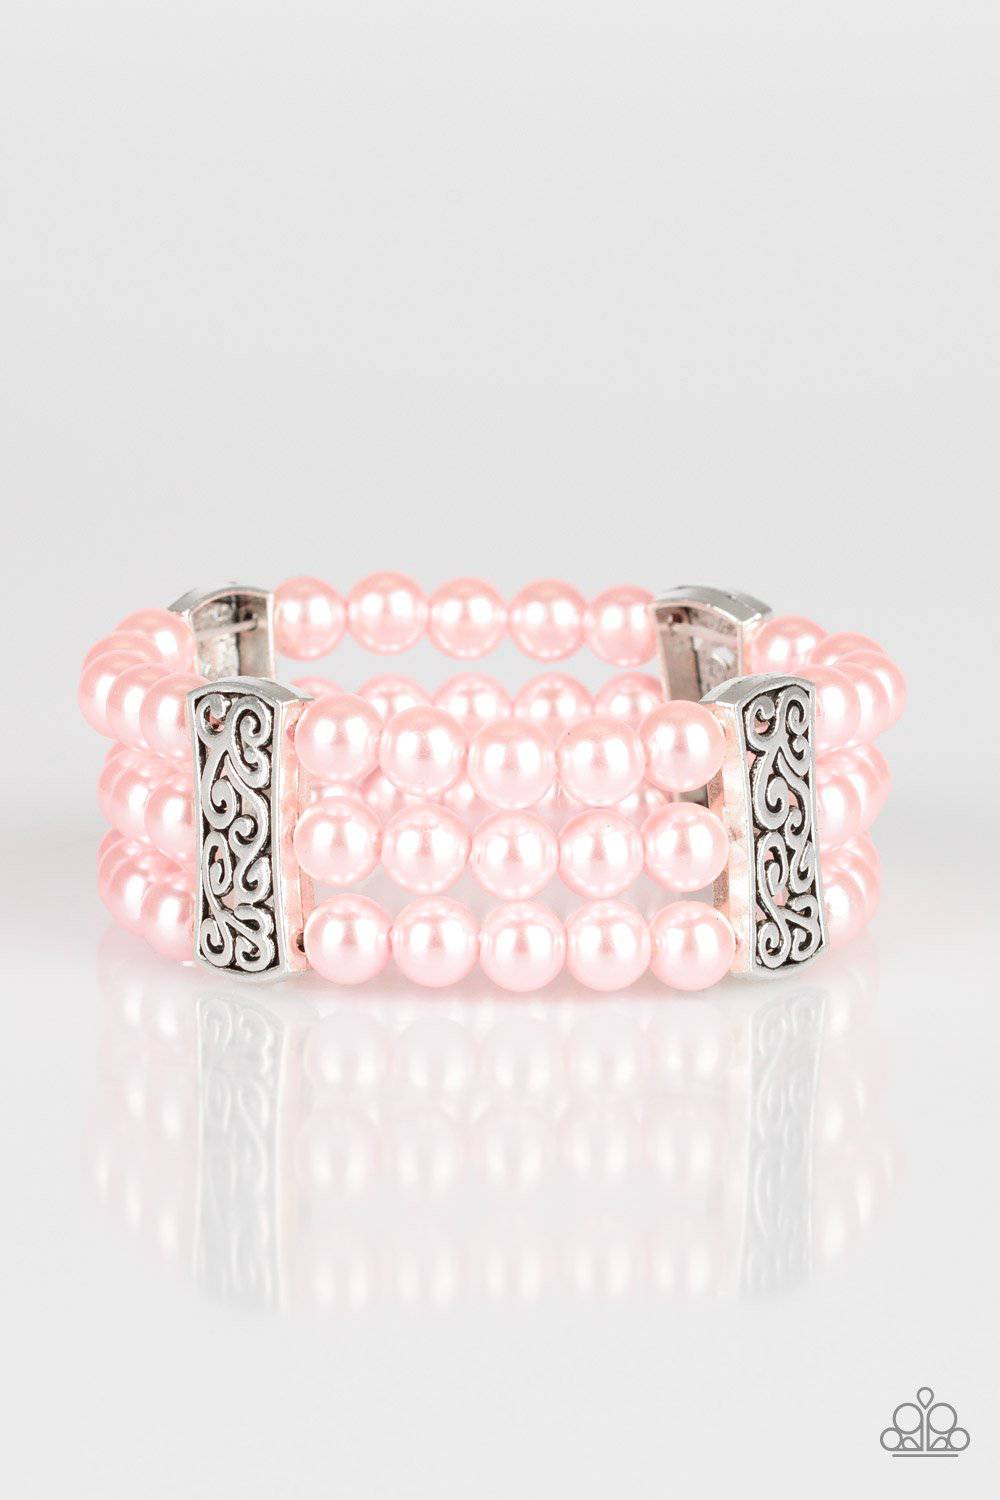 Ritzy Ritz - Pink Paparazzi Accessories - GlaMarous Titi Jewels